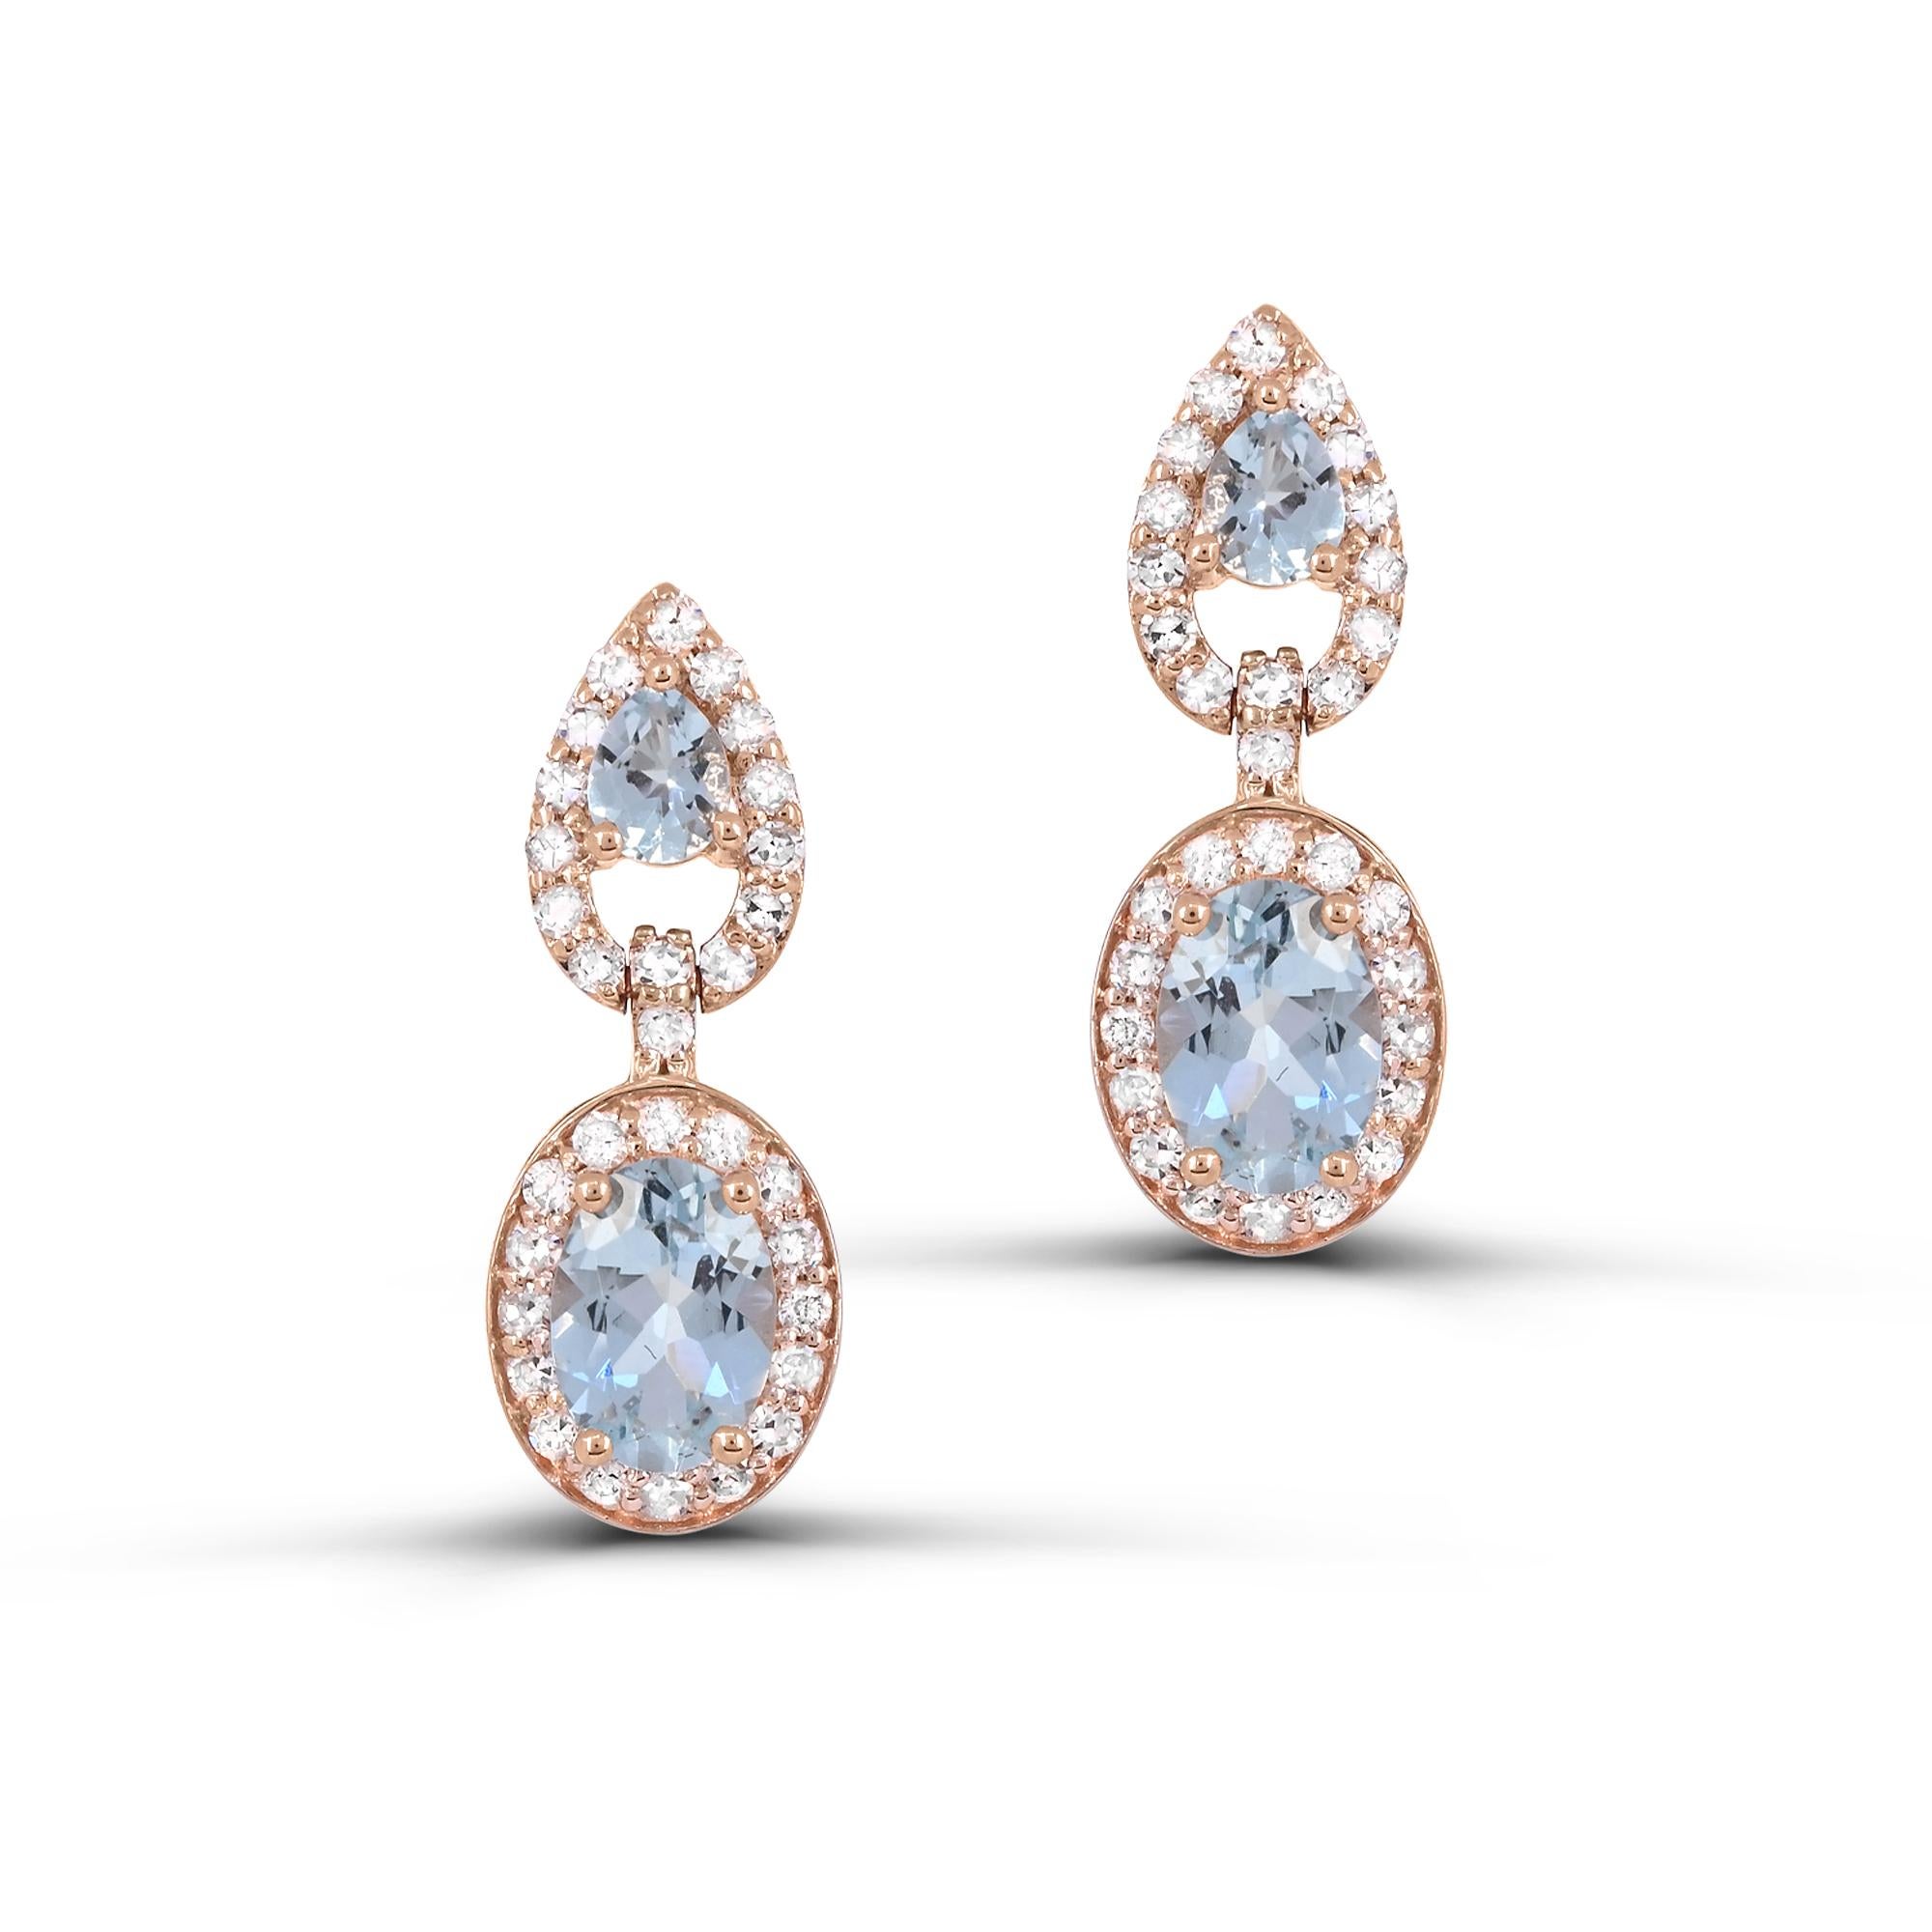 Erhöhen Sie Ihren Stil mit unseren exquisiten 2,48 Karat Aquamarin und Diamanten akzentuiert Tropfen Ohrringe in 14K Rose Gold. Diese Ohrringe aus luxuriösem 14-karätigem Roségold bestehen aus einem Aquamarin im Birnen- und einem im Ovalschliff, die